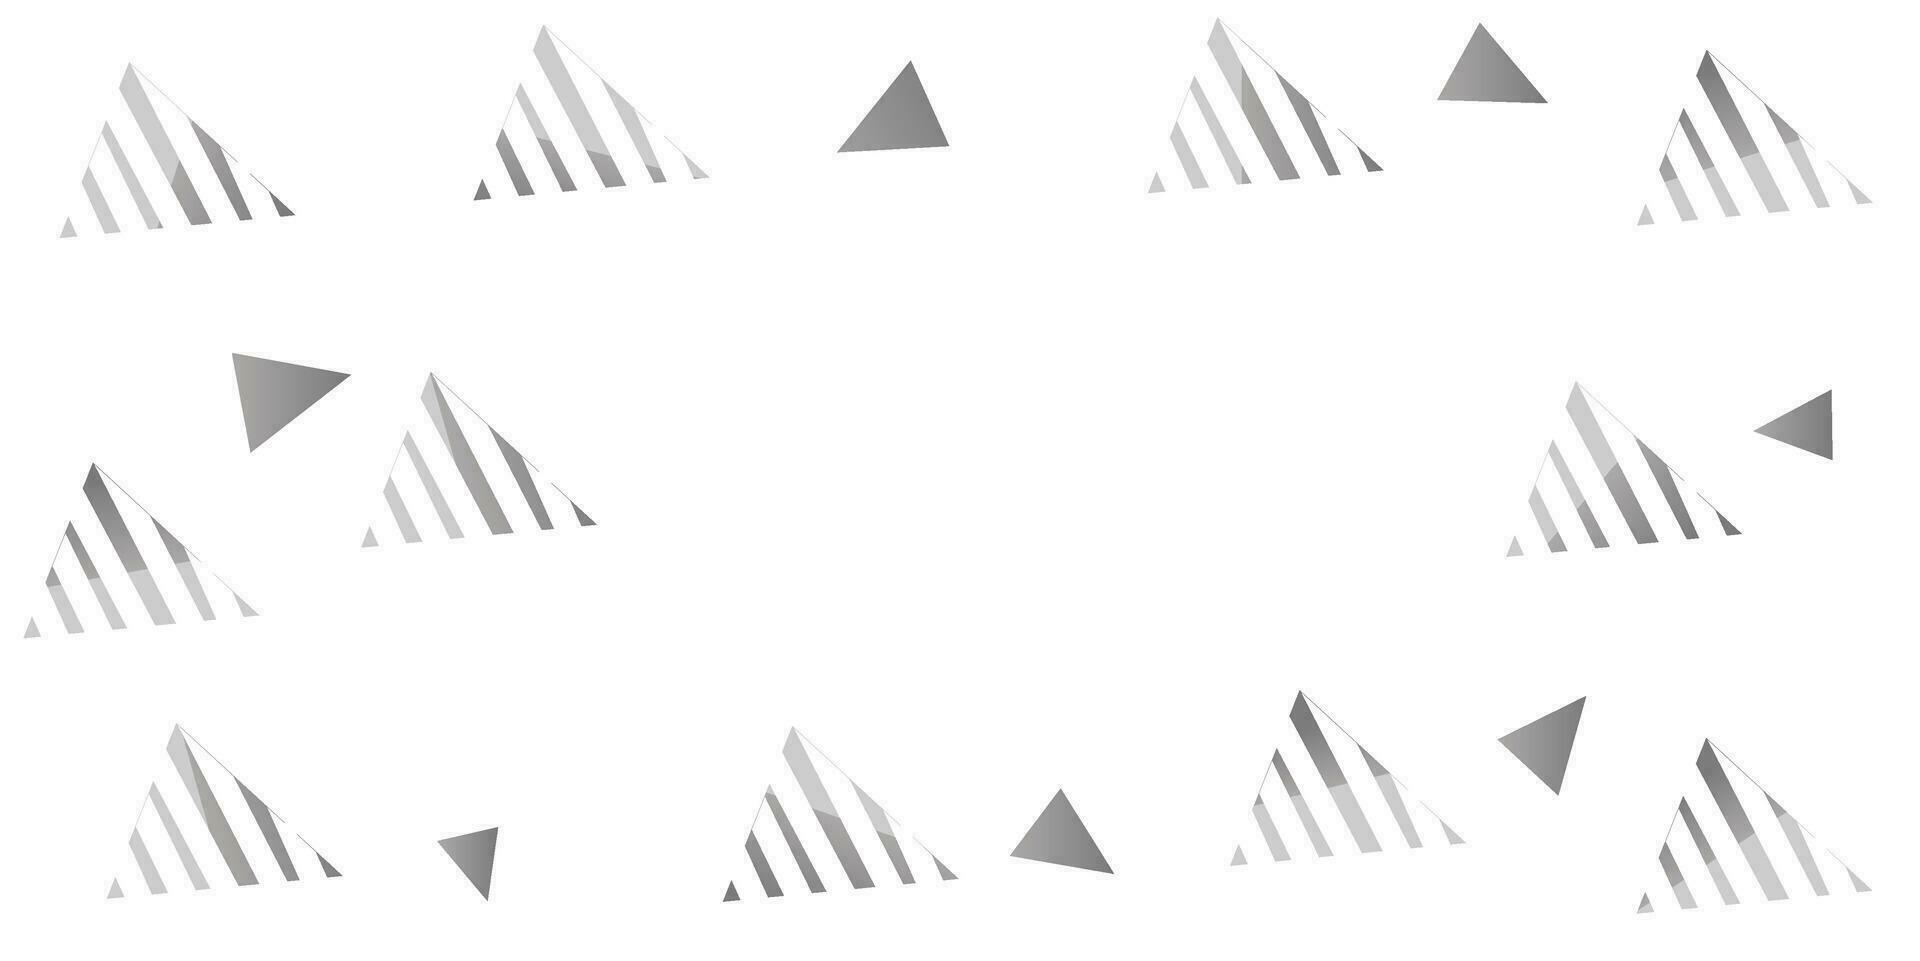 kreativ Design Illustration von Gradient abstrakt Hintergrund mit Dreieck gestalten Muster, im Weiß und grau Farben. vektor